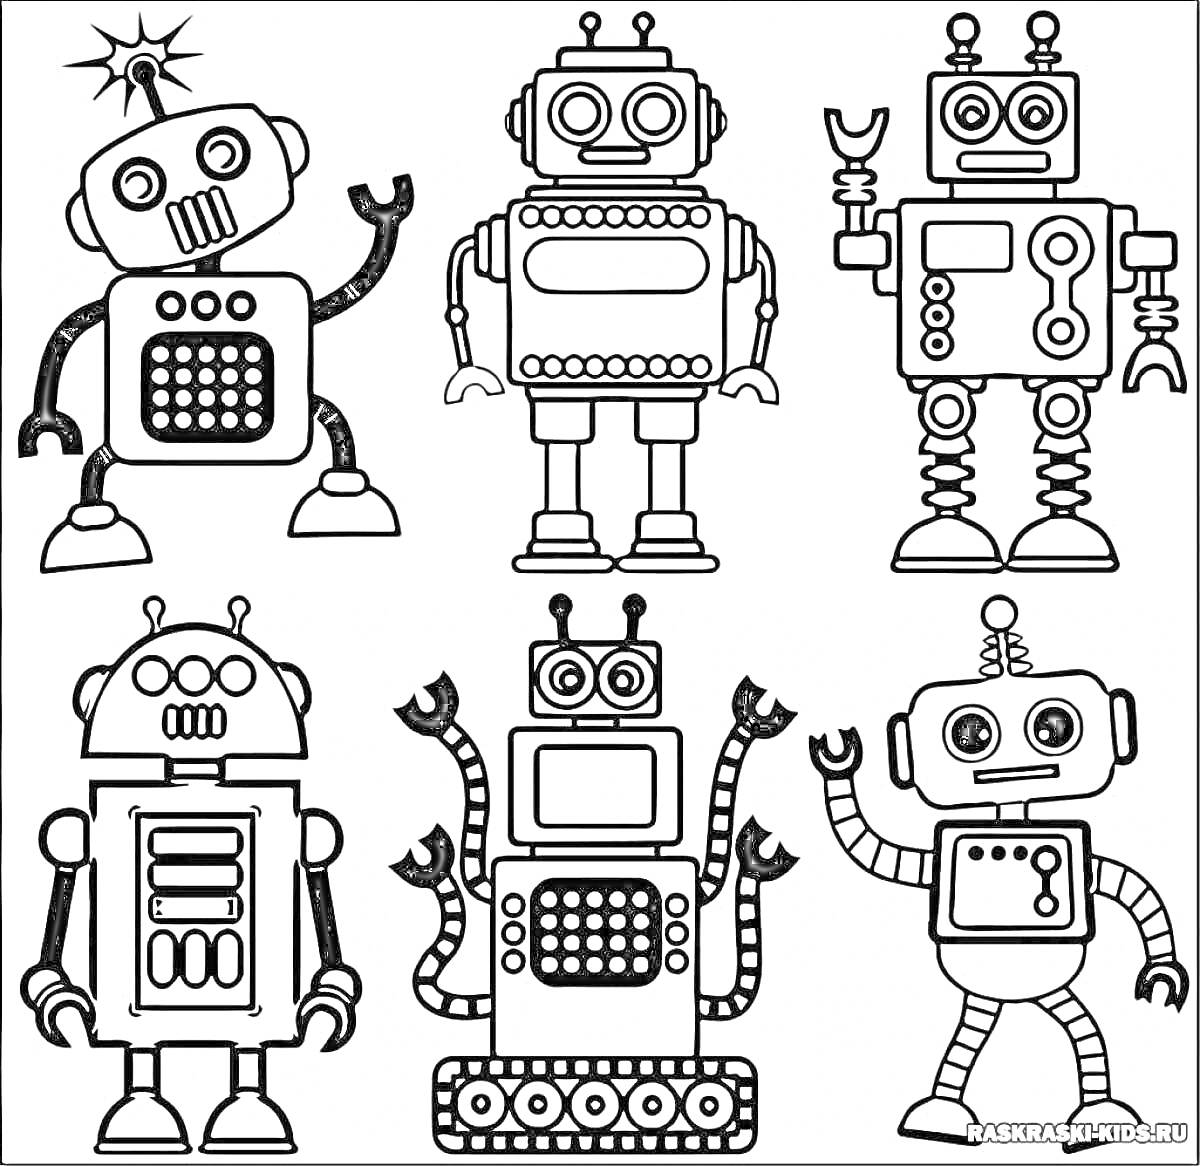 Раскраска Раскраска с роботами - шесть роботов с антеннами и рычагами на руках